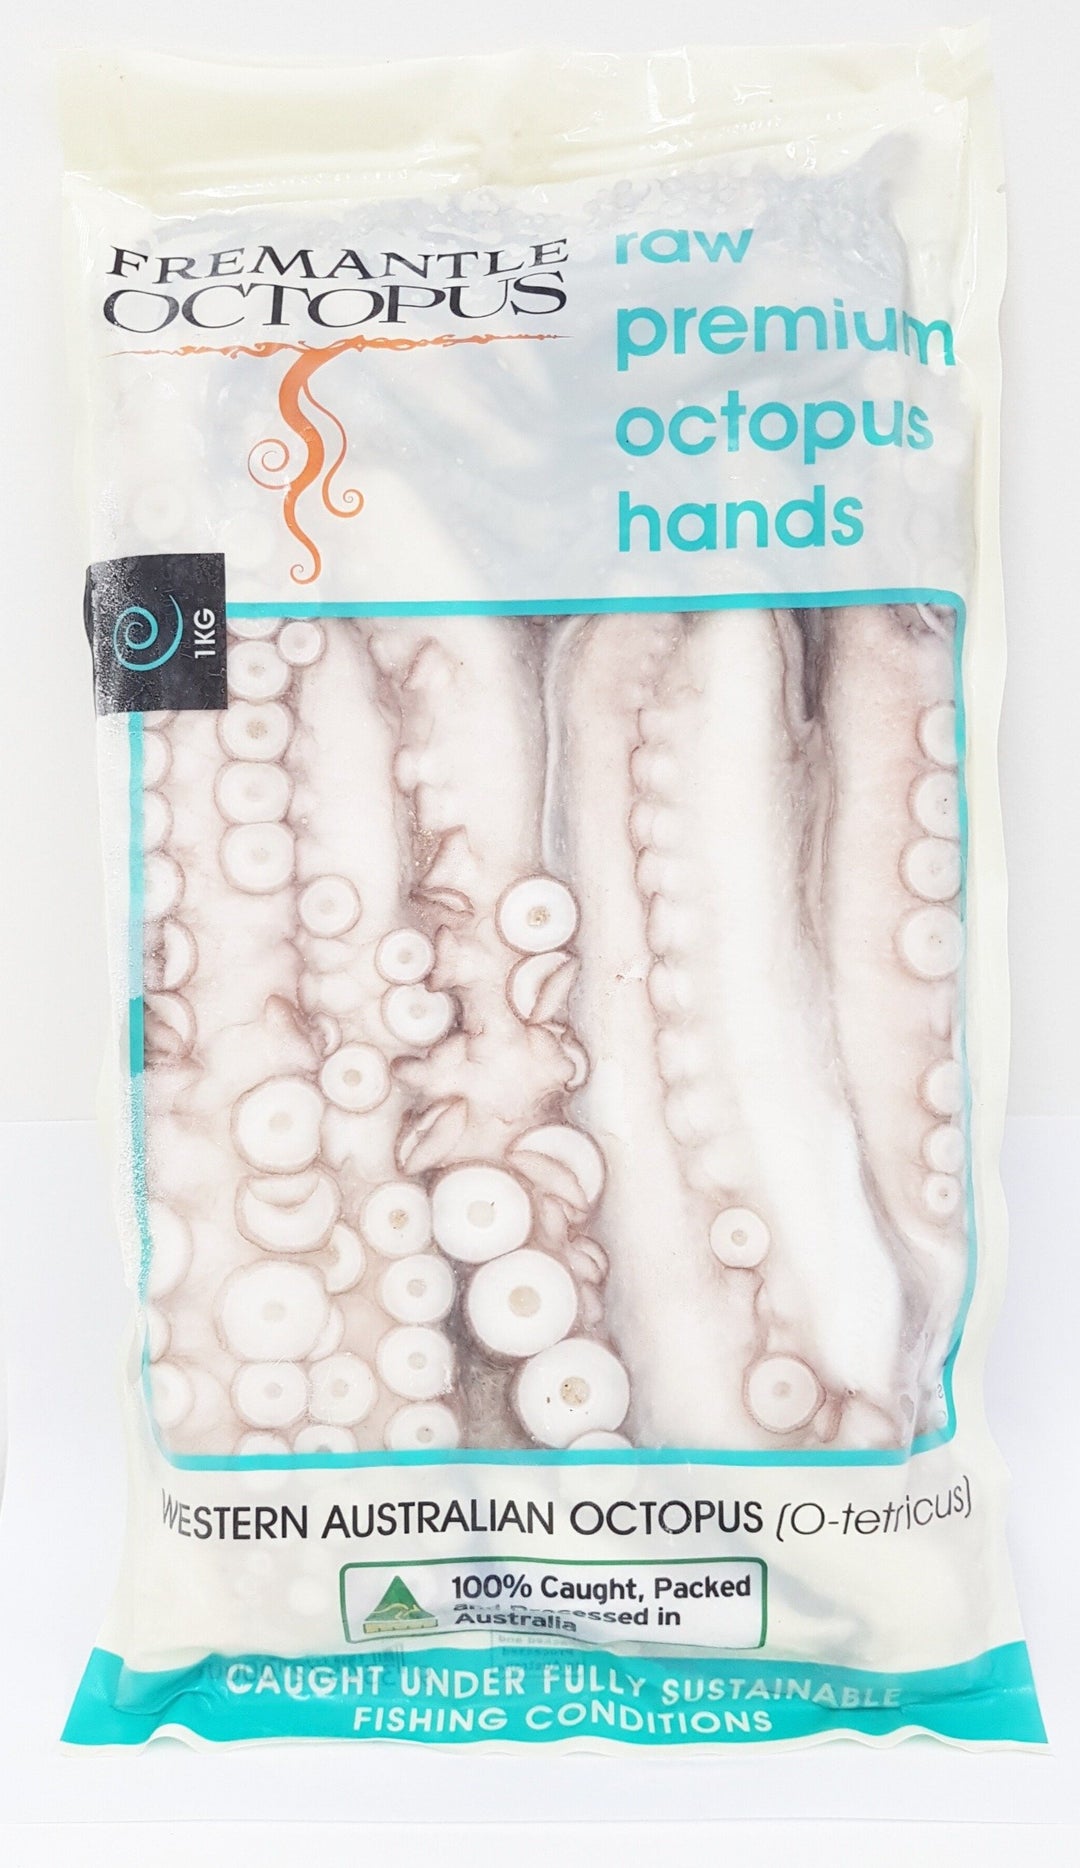 Octopus Hands 1kg Frozen Octopus